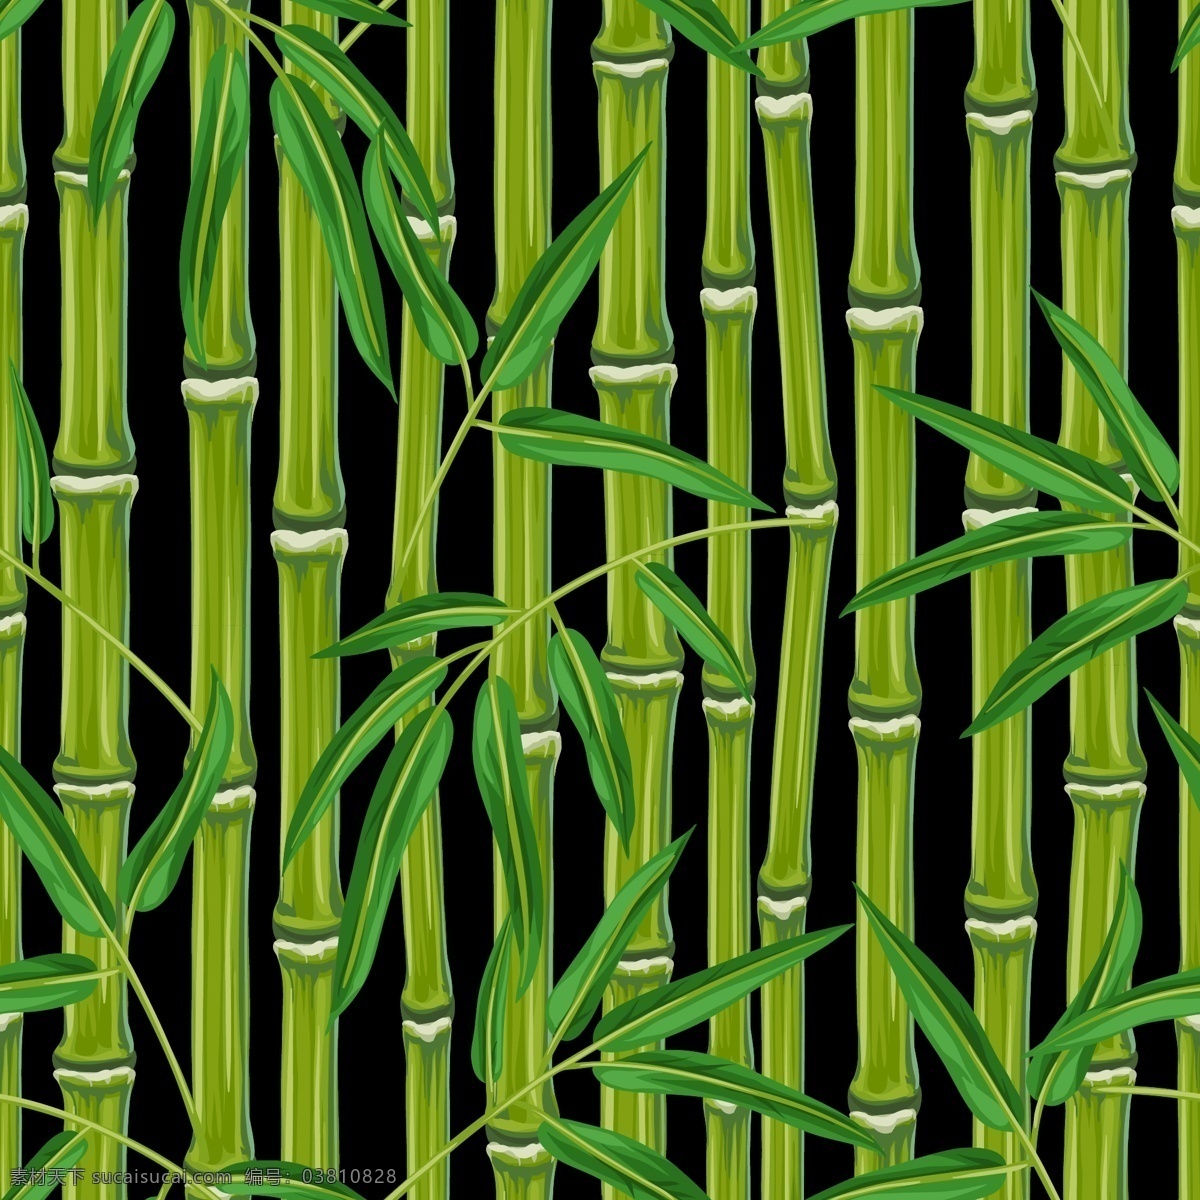 翠绿 竹子 背景 底纹 清新 夏天 植物 竹叶